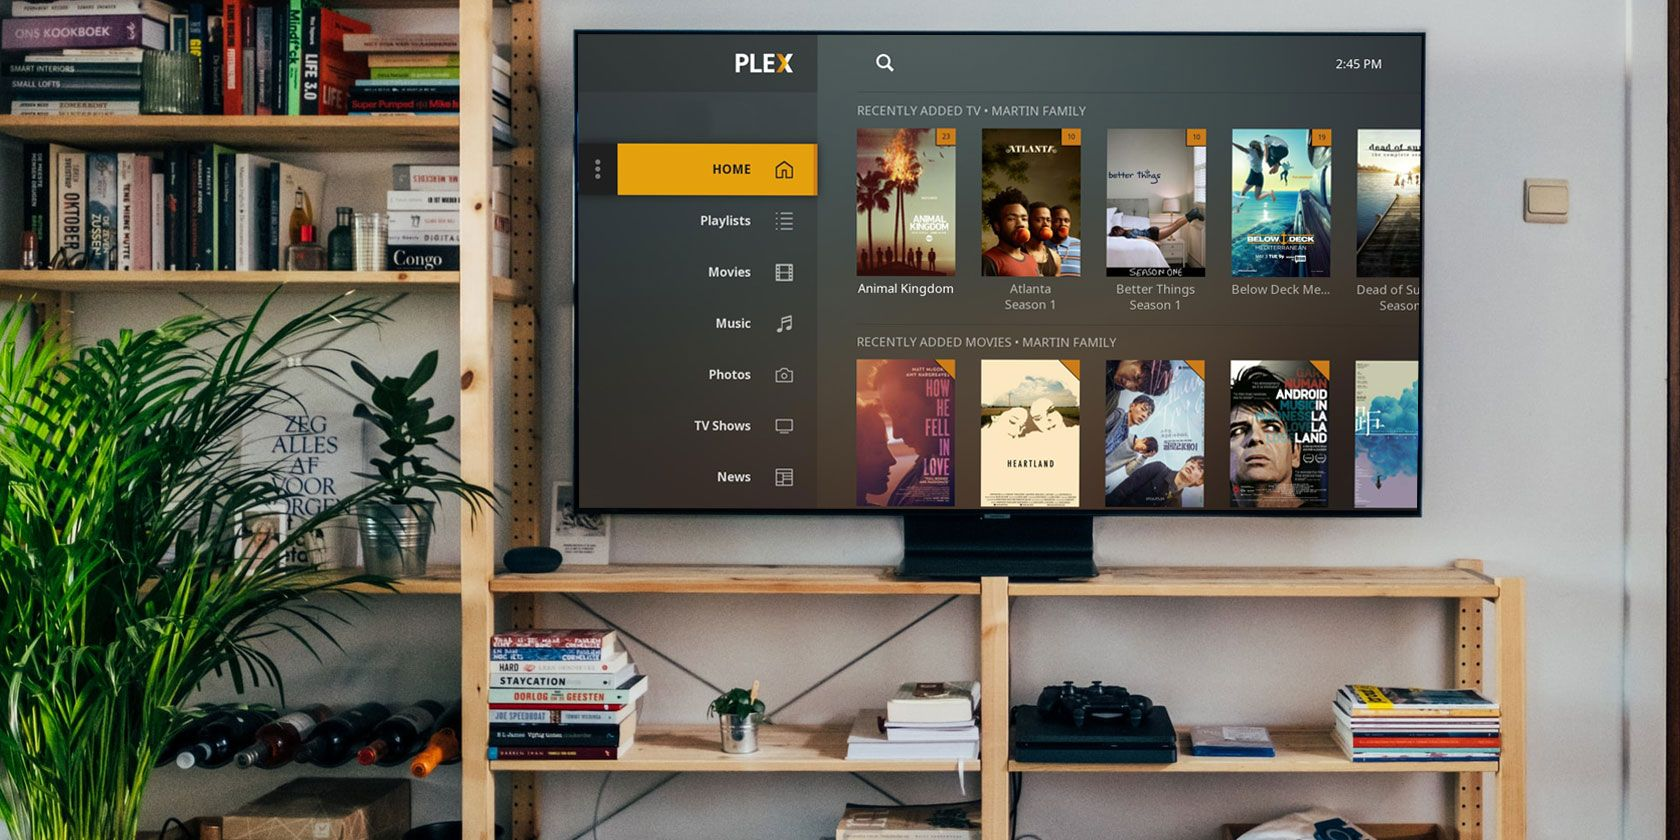 plex on a tv screen